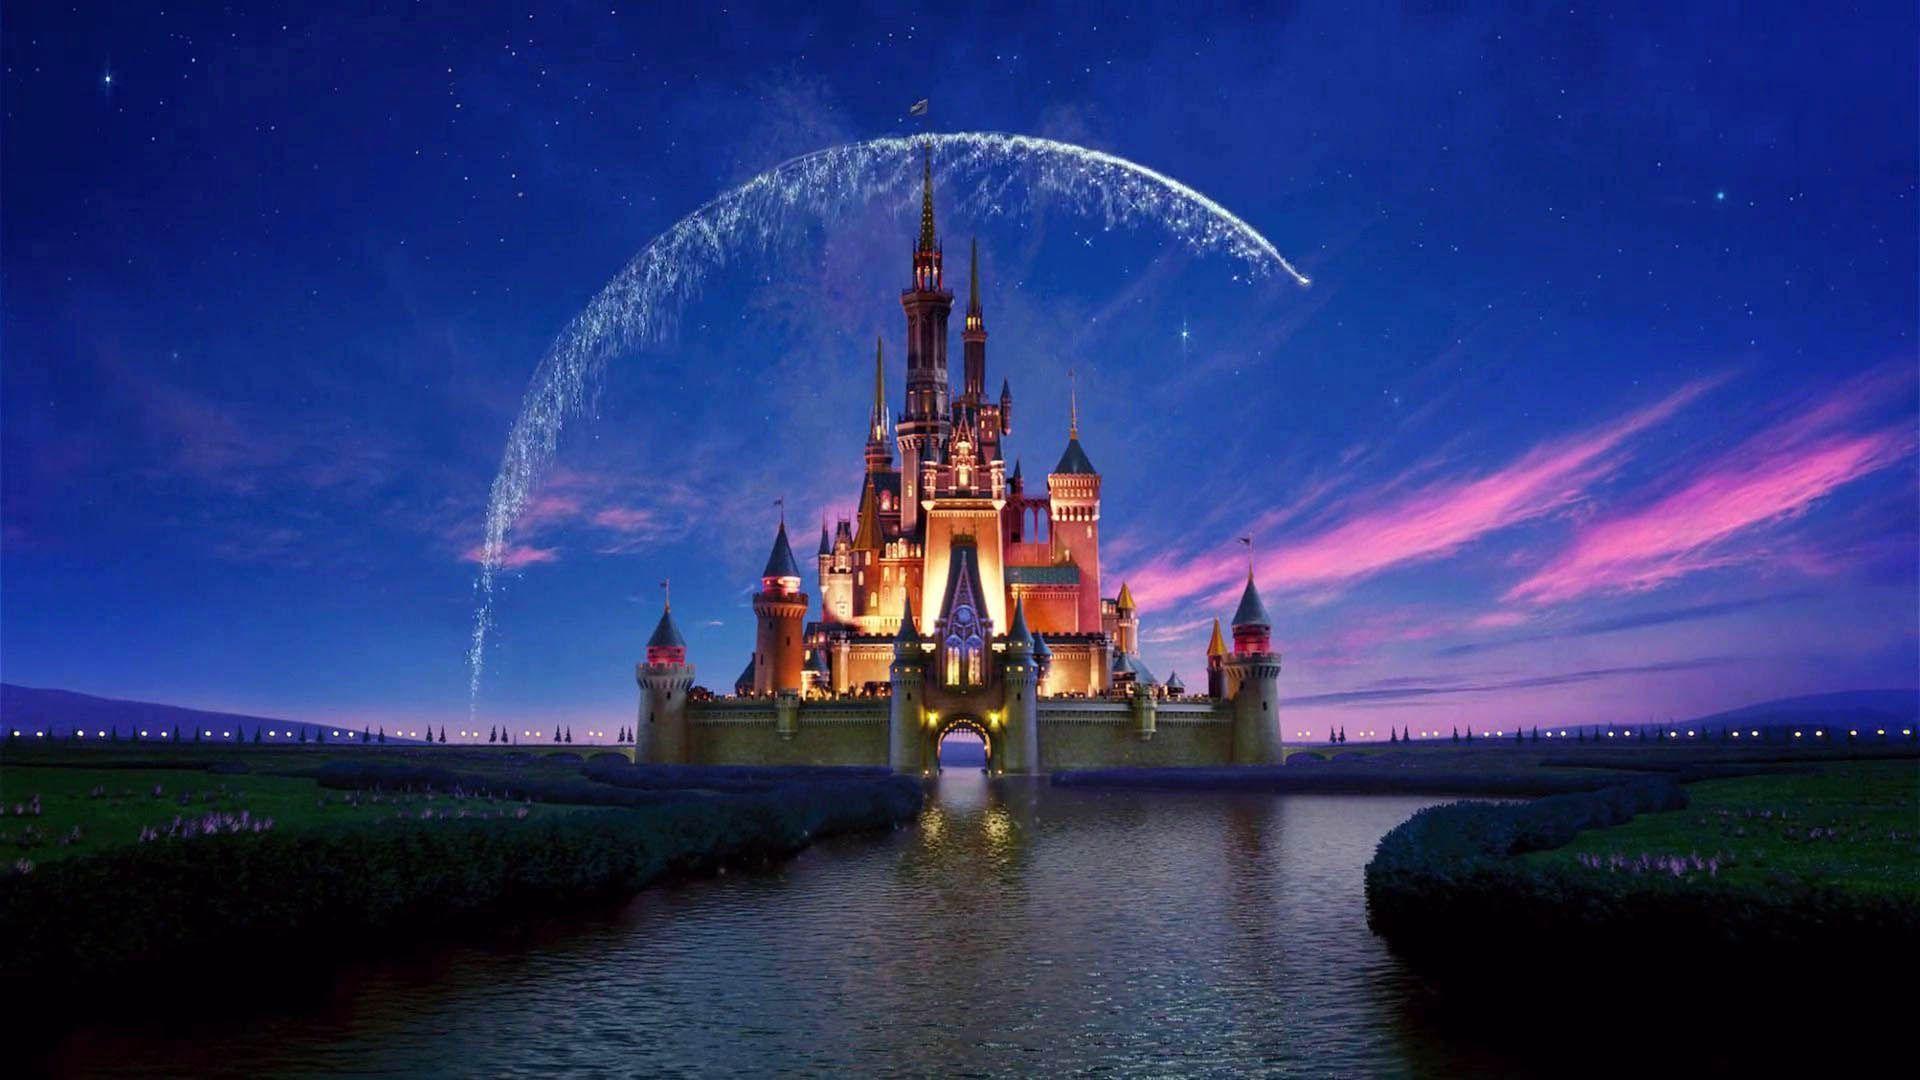 Disney Castle x Full HD Wallpaper on. Art Wallpaper